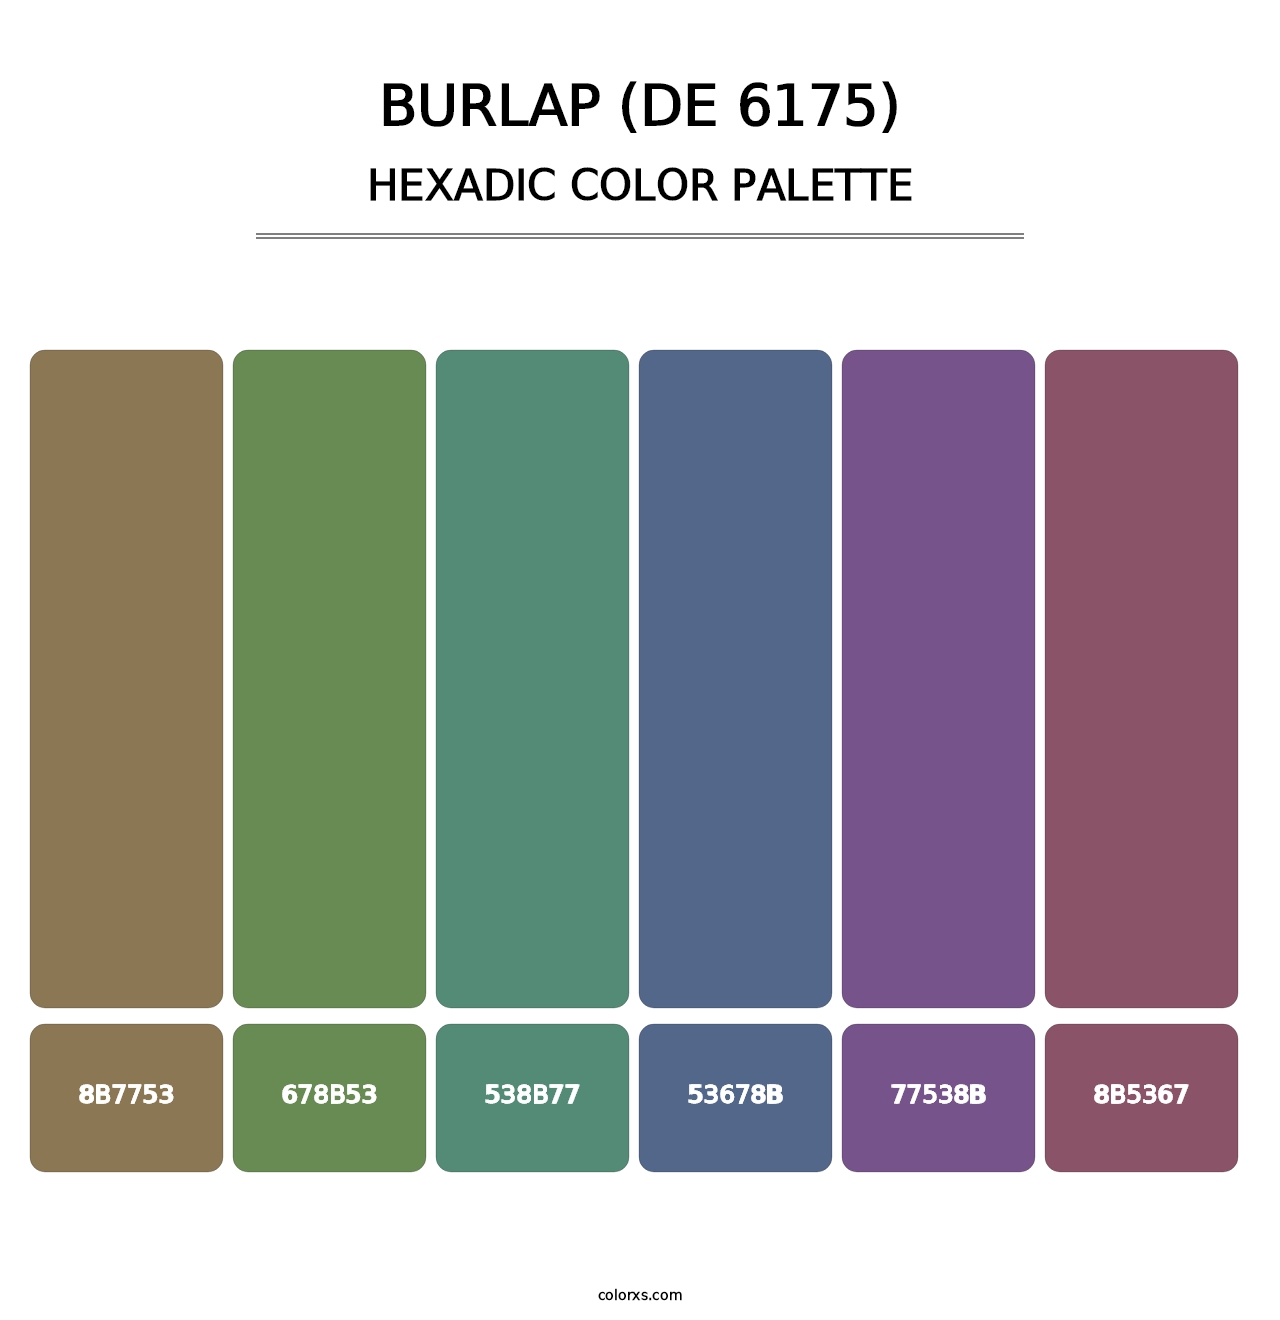 Burlap (DE 6175) - Hexadic Color Palette